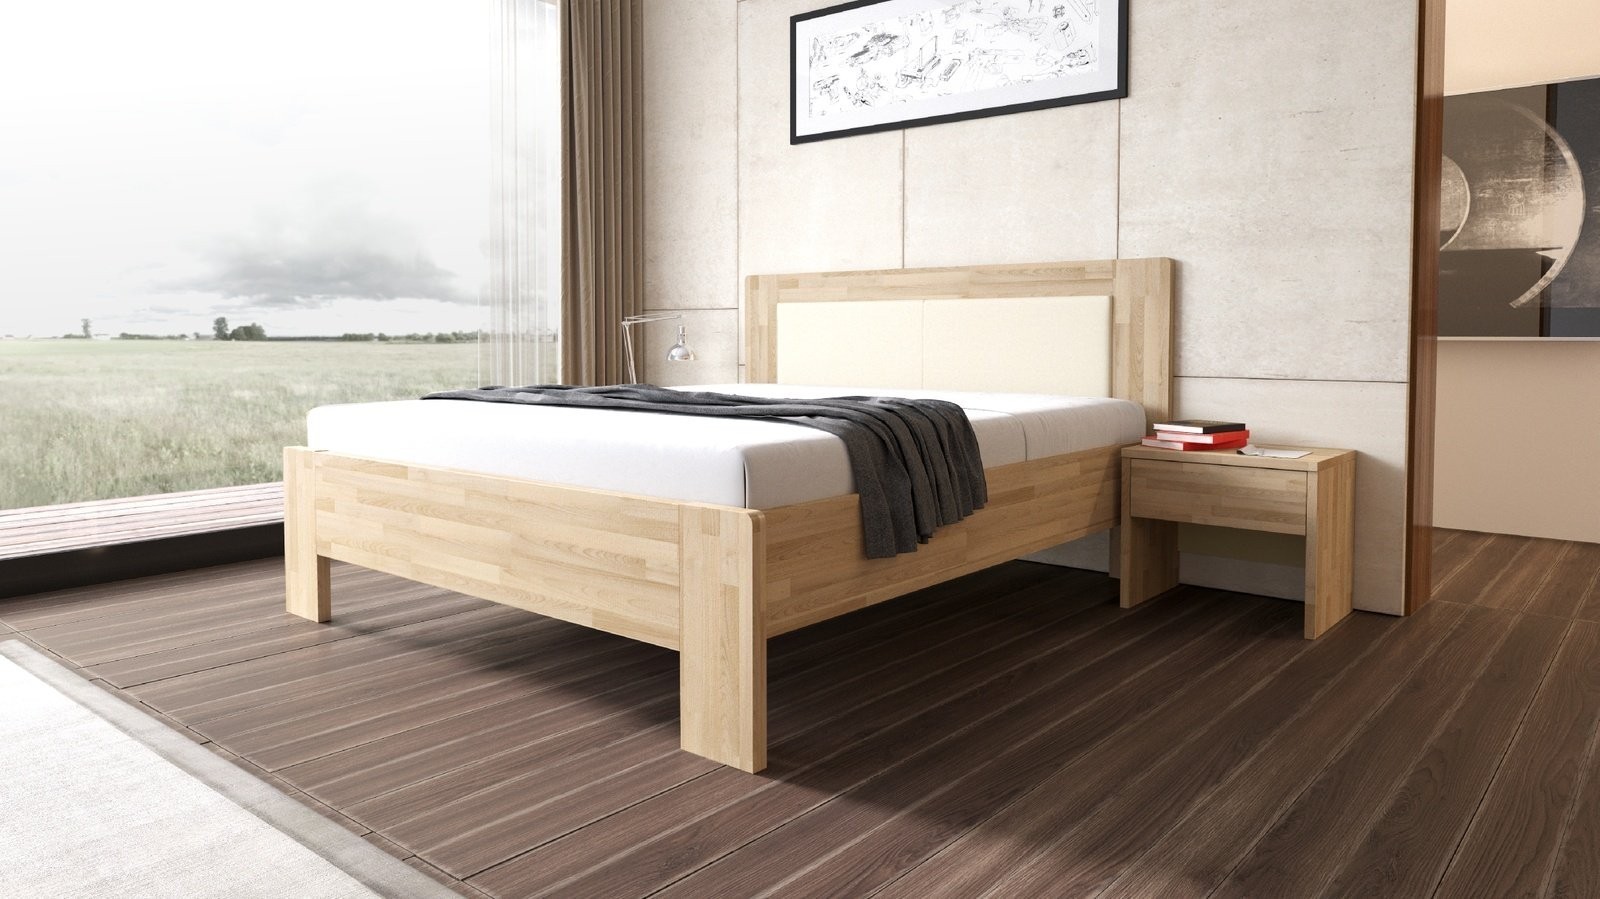 TEXPOL LÍVIA - masivní dubová postel s čalouněným čelem 180 x 200 cm, dub masiv + čalouněné čelo